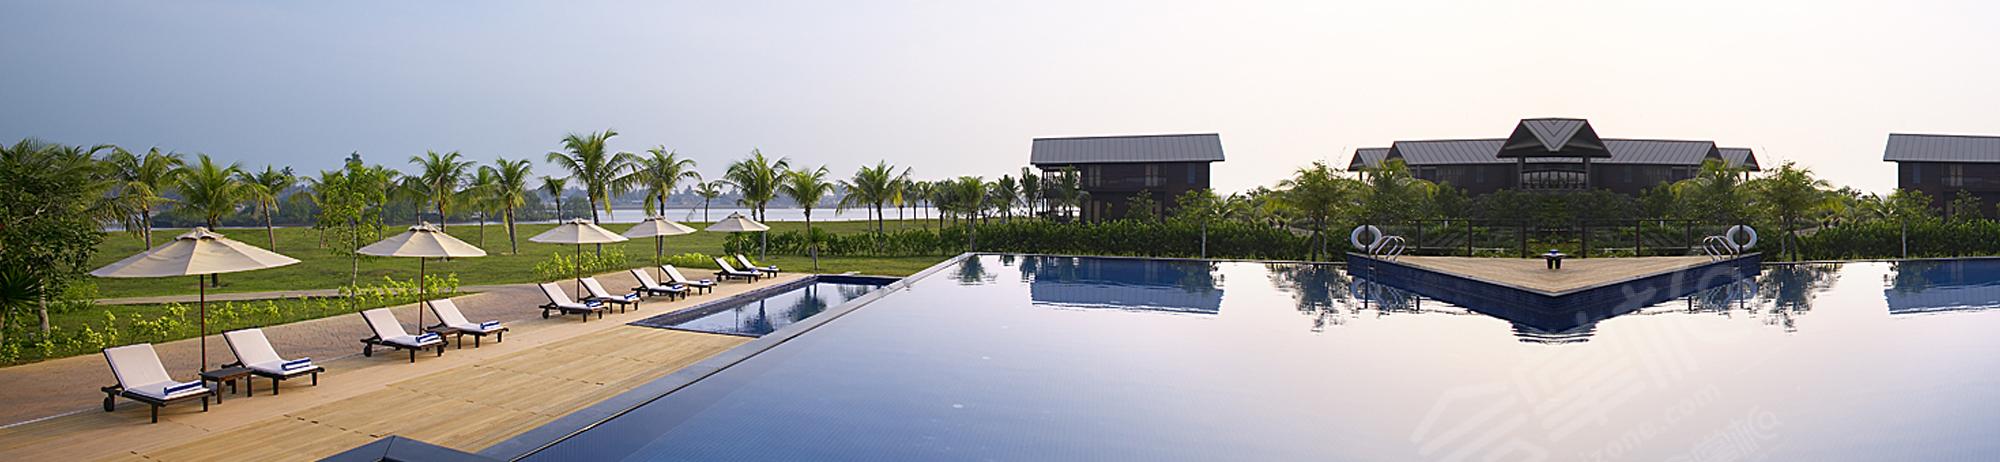 登嘉楼四星级酒店最大容纳200人的会议场地|鲁容码头及度假酒店(Duyong Marina & Resort)的价格与联系方式